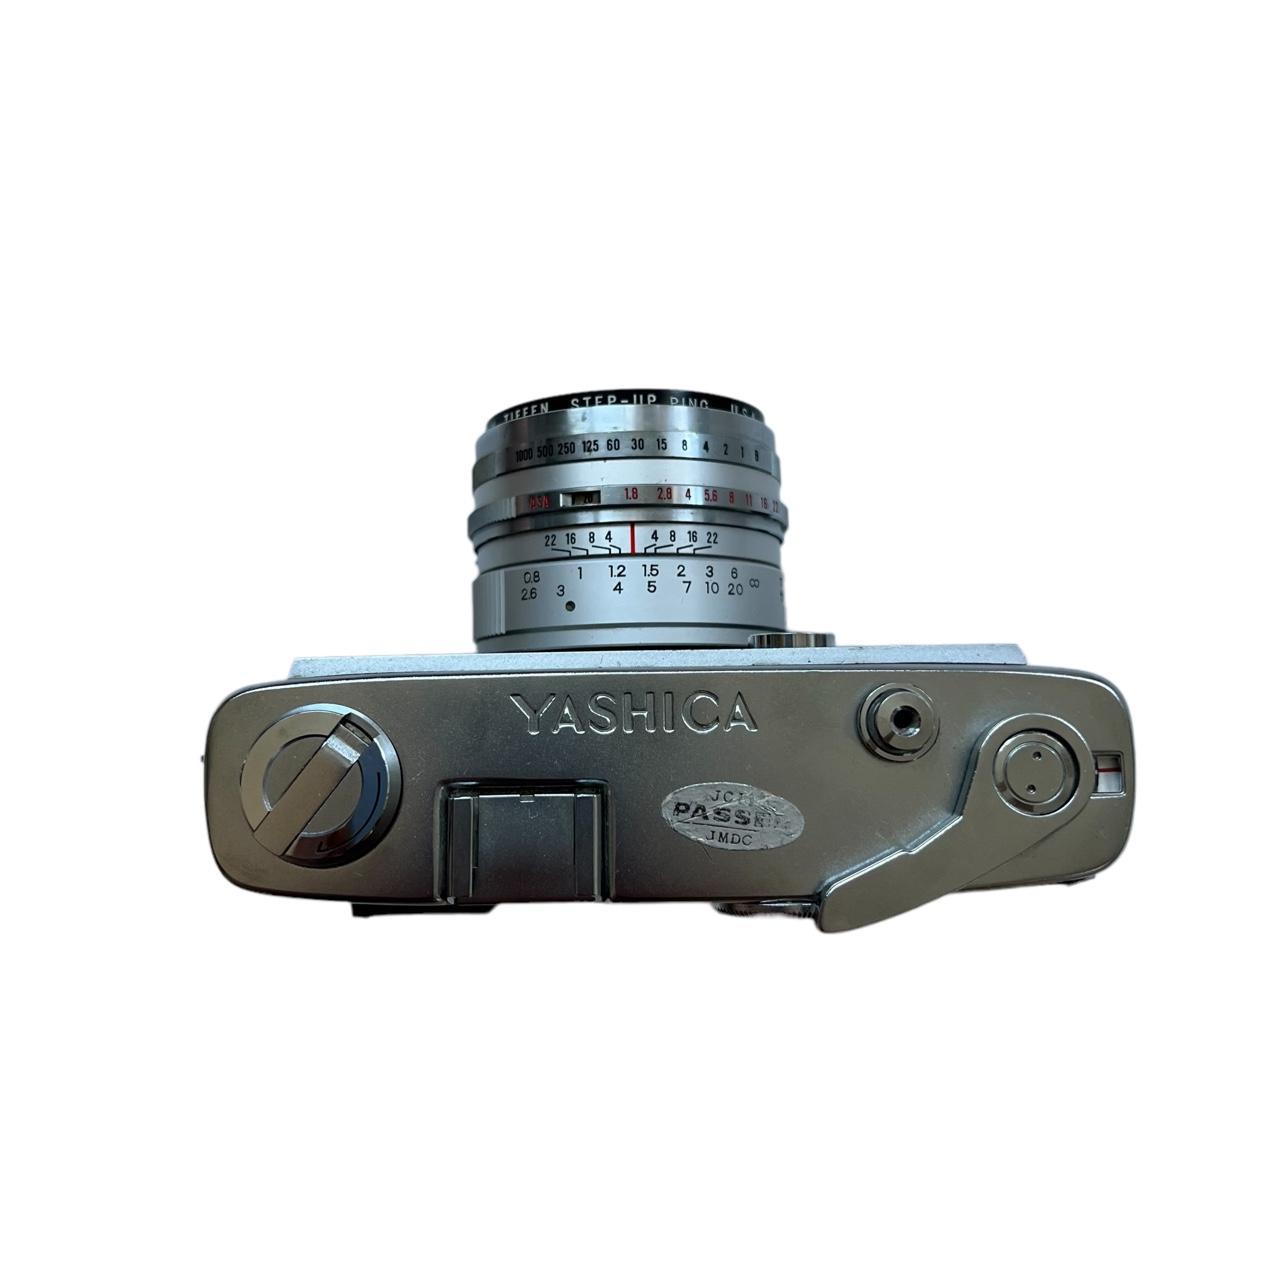 Product Image 3 - Yashica Lynx 5000E

~range finder camera